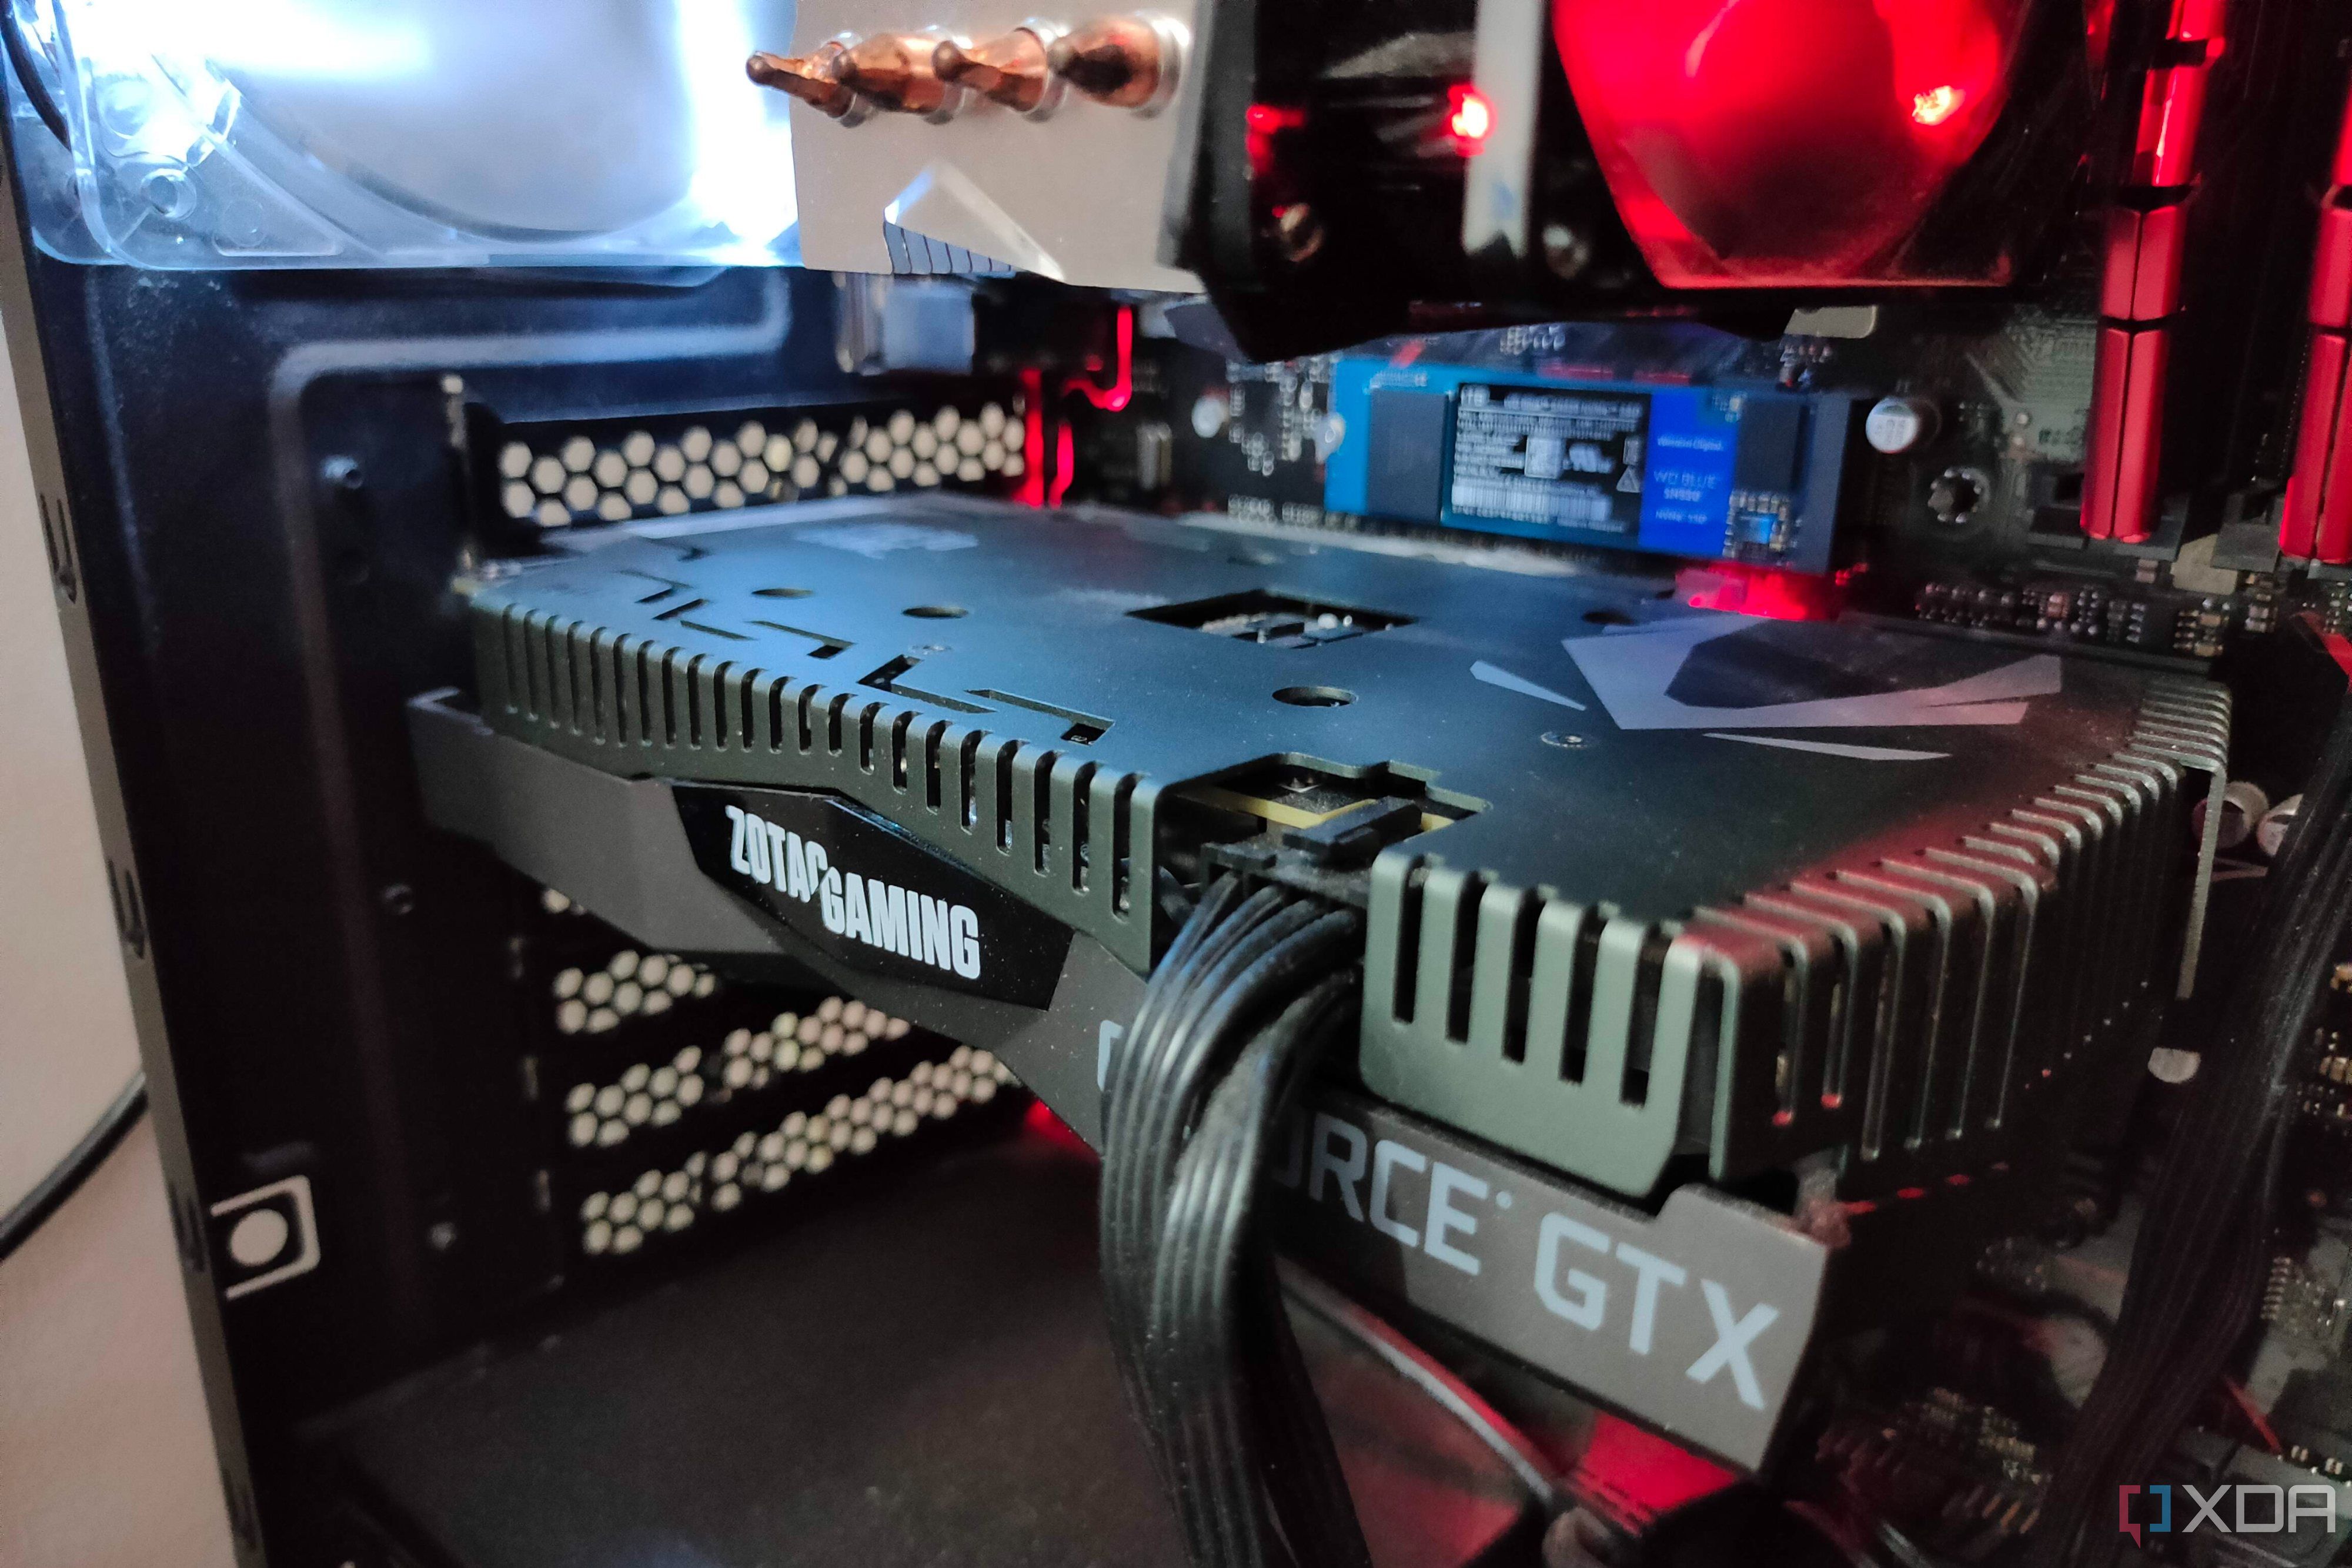 Close up of GTX 1660 Ti GPU inside a gaming PC